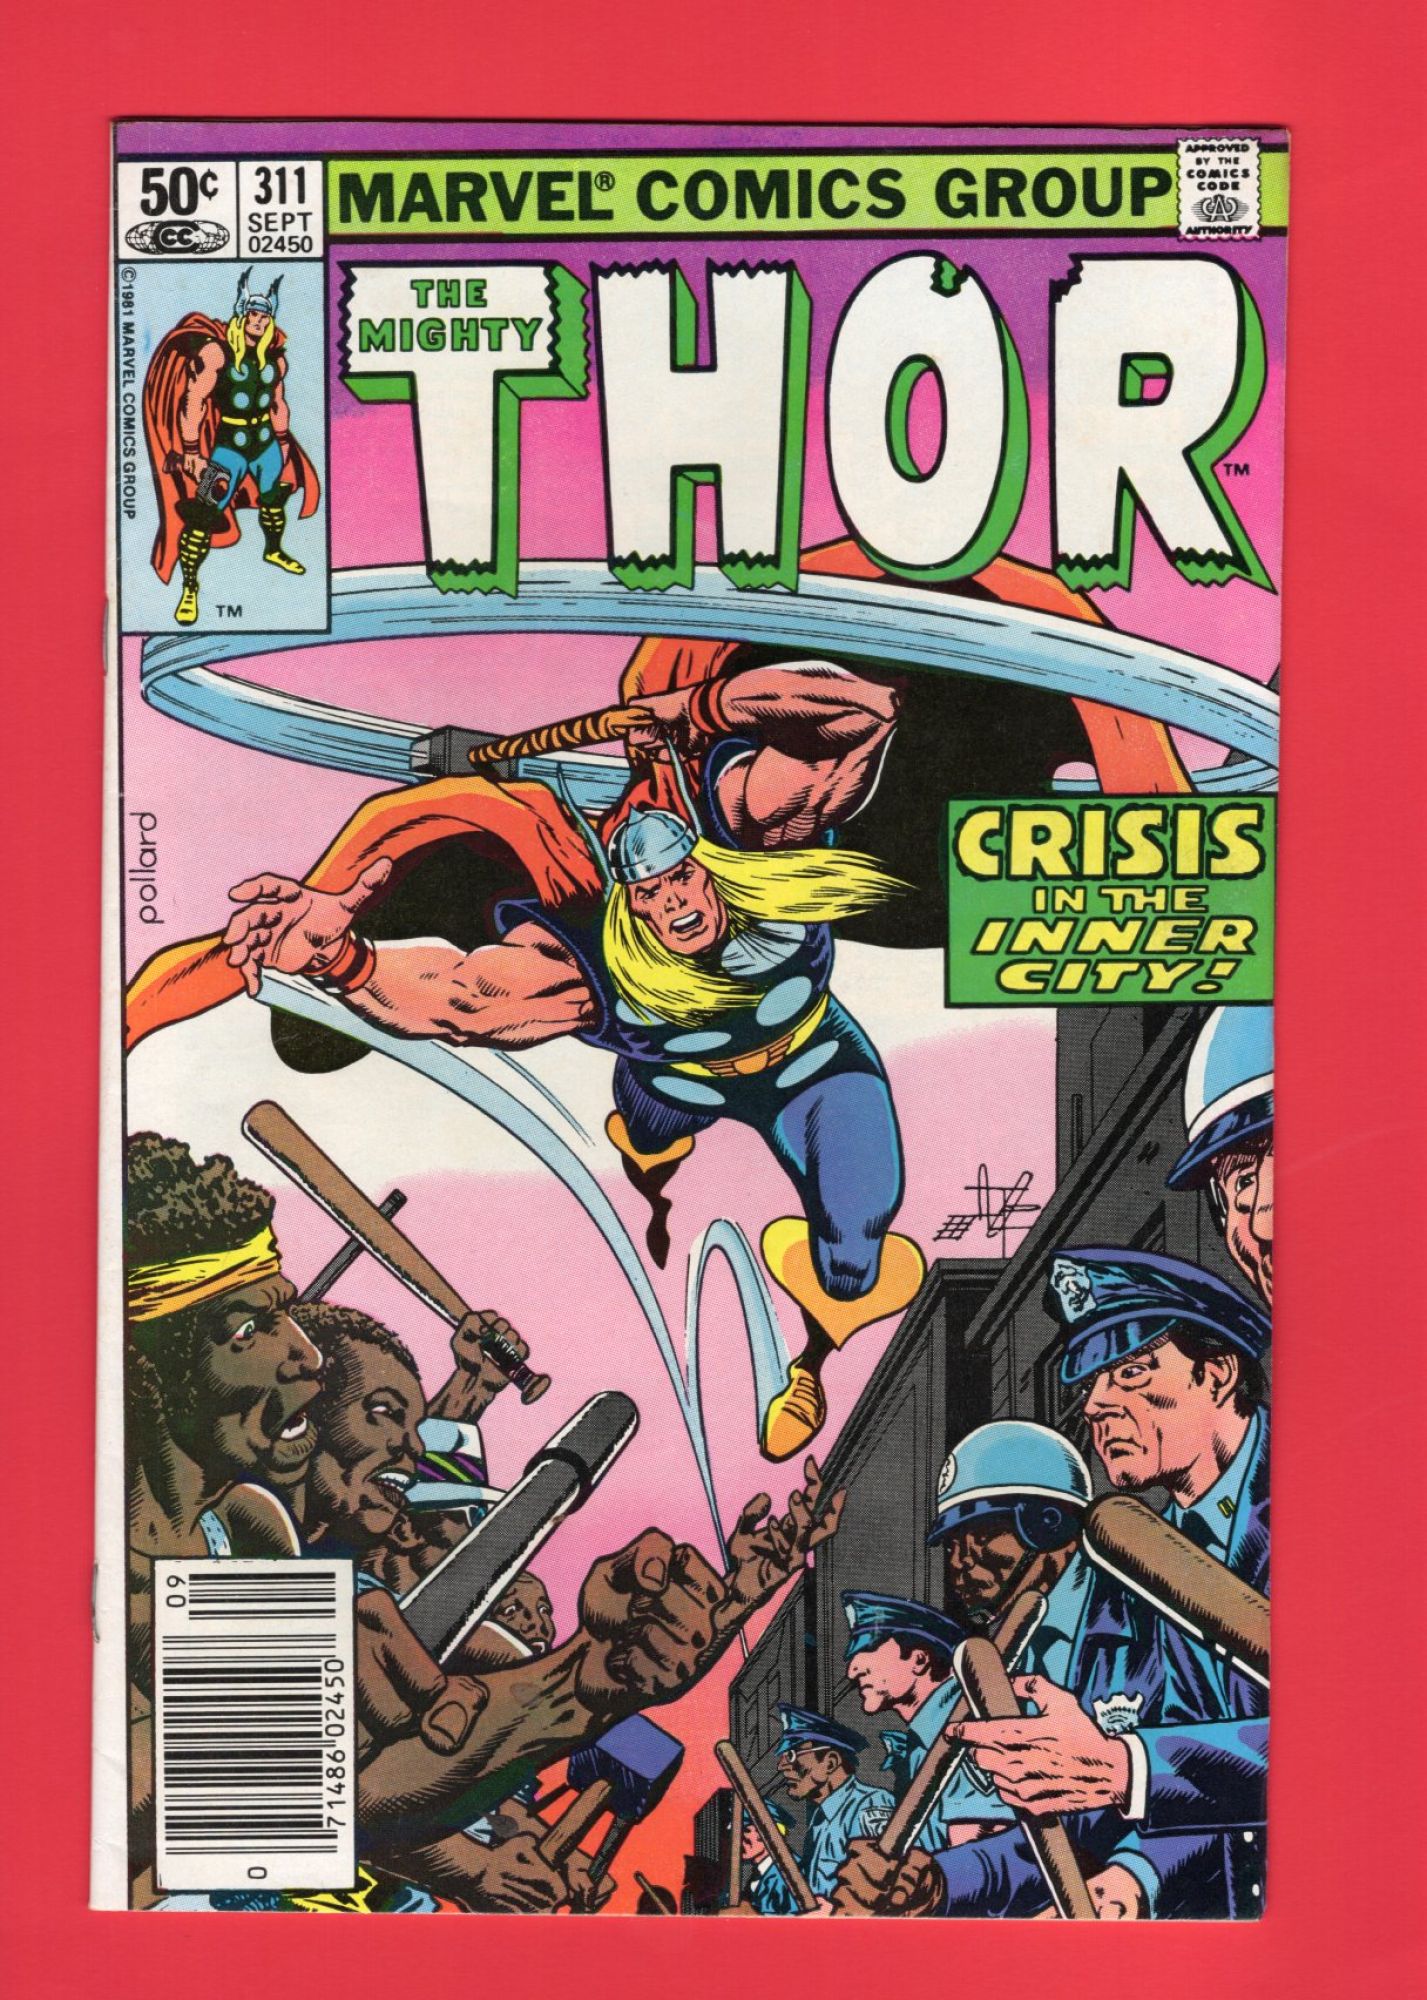 Thor #311, Sep 1981, 